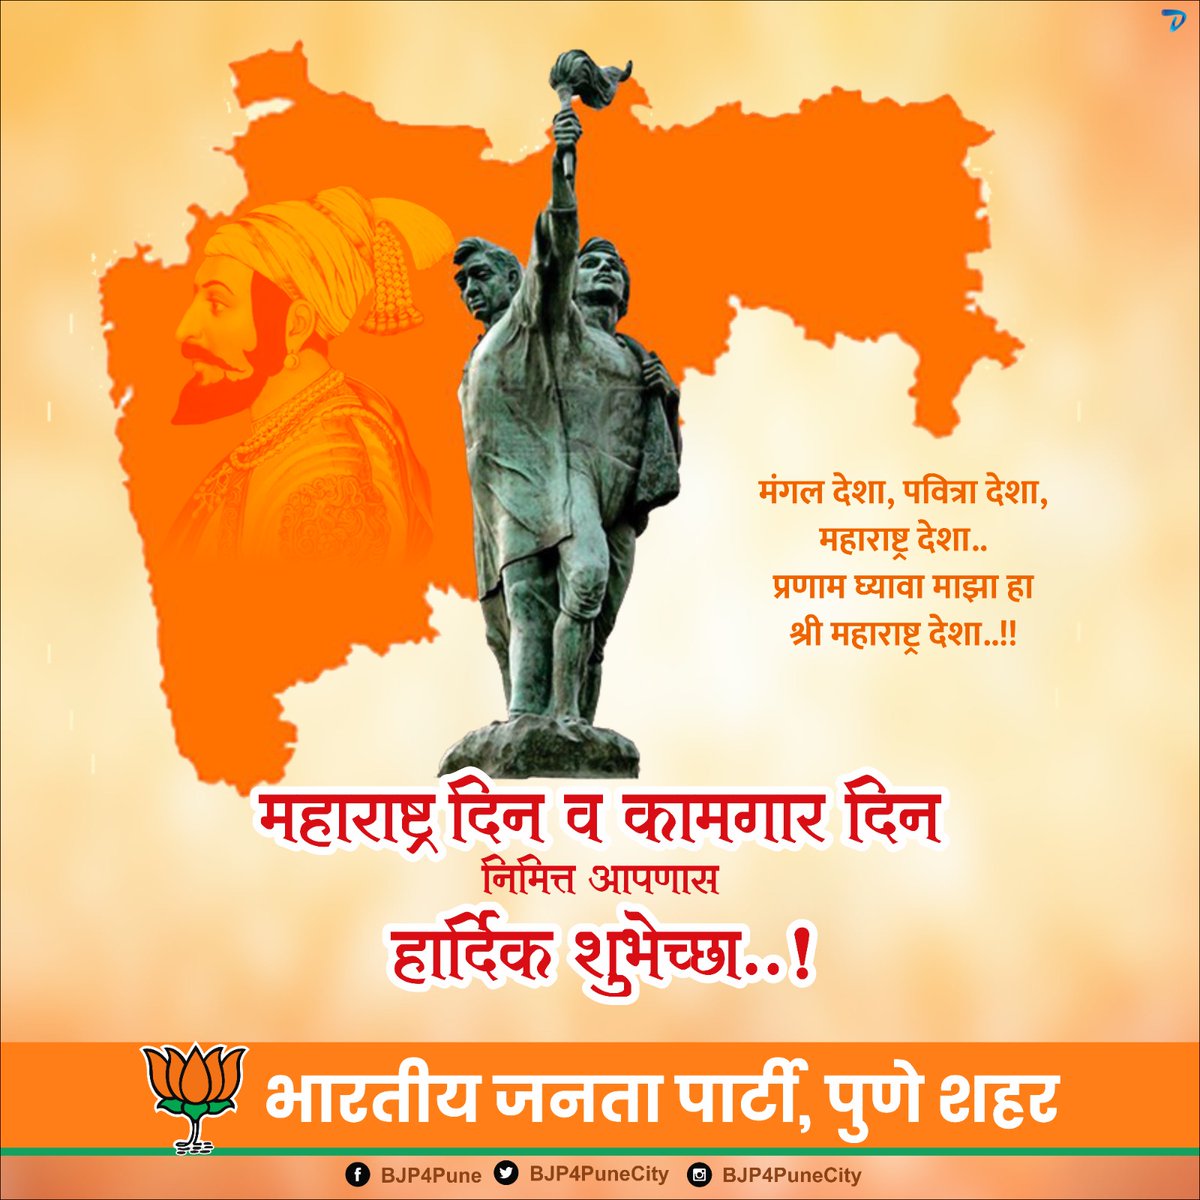 जय जय महाराष्ट्र माझा ... 
गर्जा महाराष्ट्र माझा!
महाराष्ट्र दिन आणि जागतिक कामगार दिनाच्या सर्वांना मनःपूर्वक शुभेच्छा..!
 #1stMay #Maharashtraday 
#गौरवशालीमहाराष्ट्र